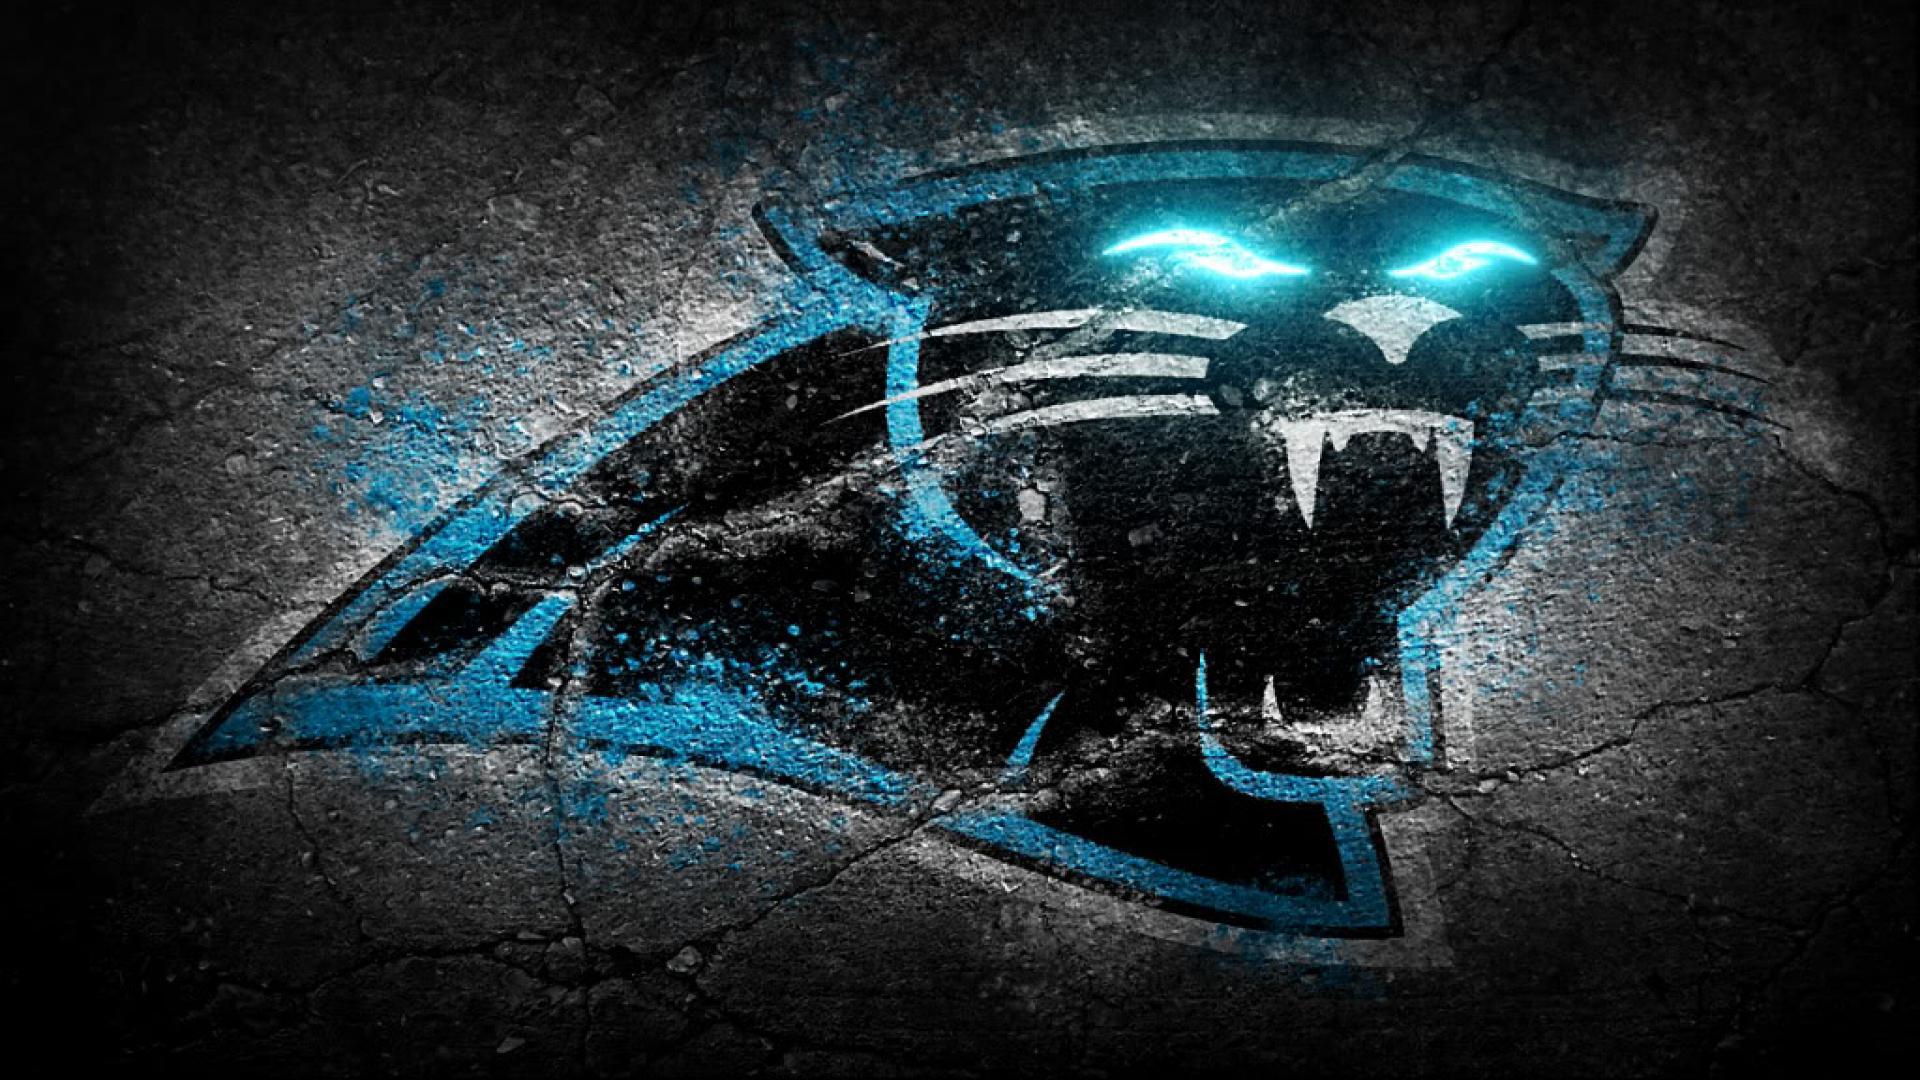 Wallpaper.wiki Carolina Panthers Logo Of Team 1920x1080 PIC